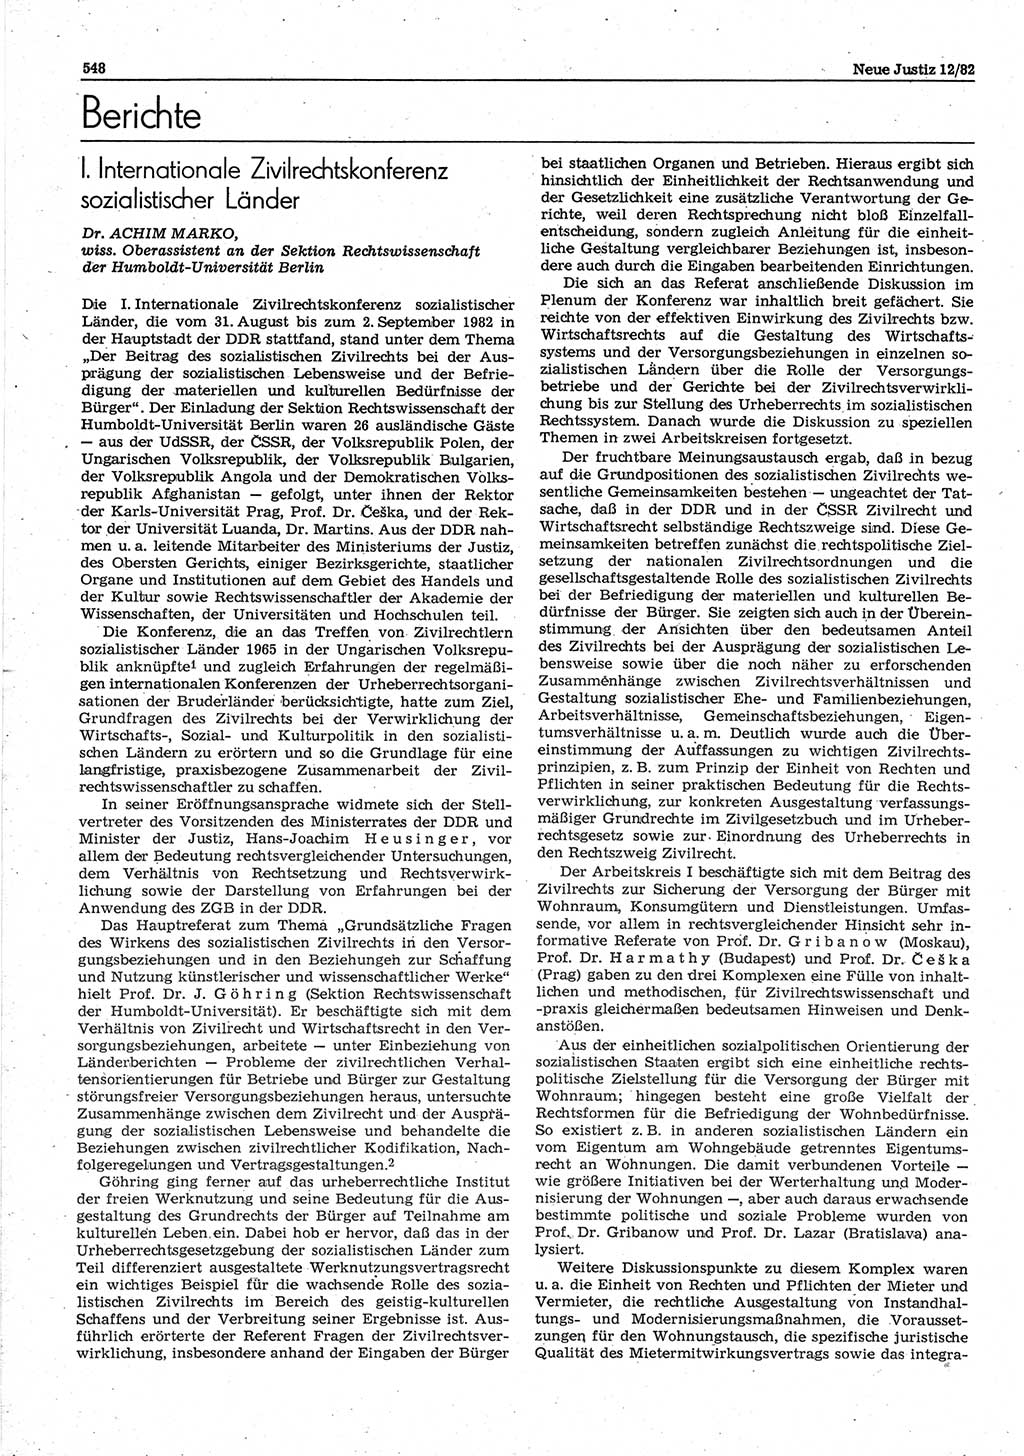 Neue Justiz (NJ), Zeitschrift für sozialistisches Recht und Gesetzlichkeit [Deutsche Demokratische Republik (DDR)], 36. Jahrgang 1982, Seite 548 (NJ DDR 1982, S. 548)